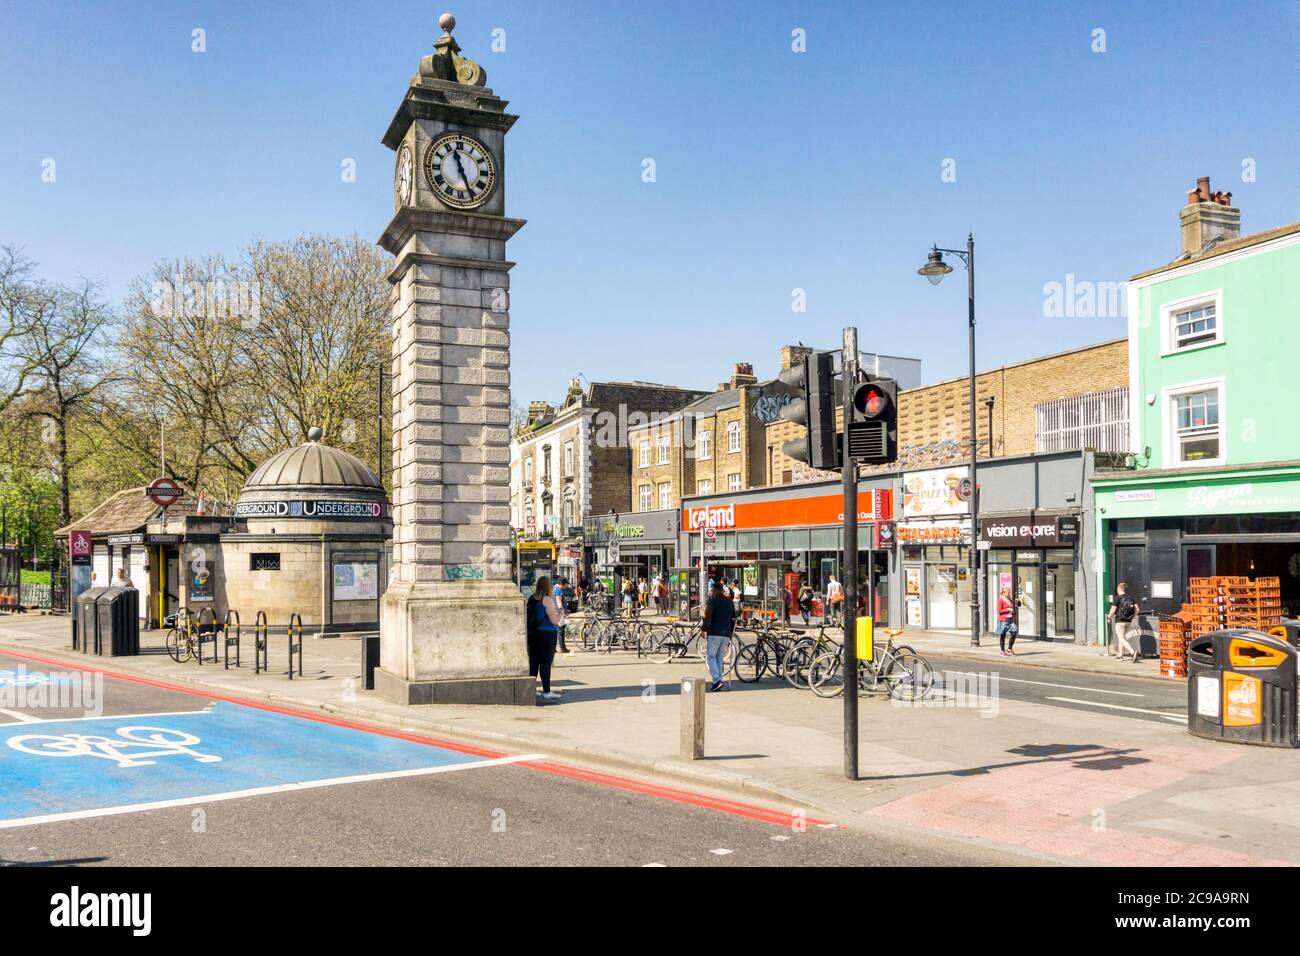 Station de métro et tour d'horloge de Clapham Common sur le trottoir, Clapham, sud de Londres. Banque D'Images